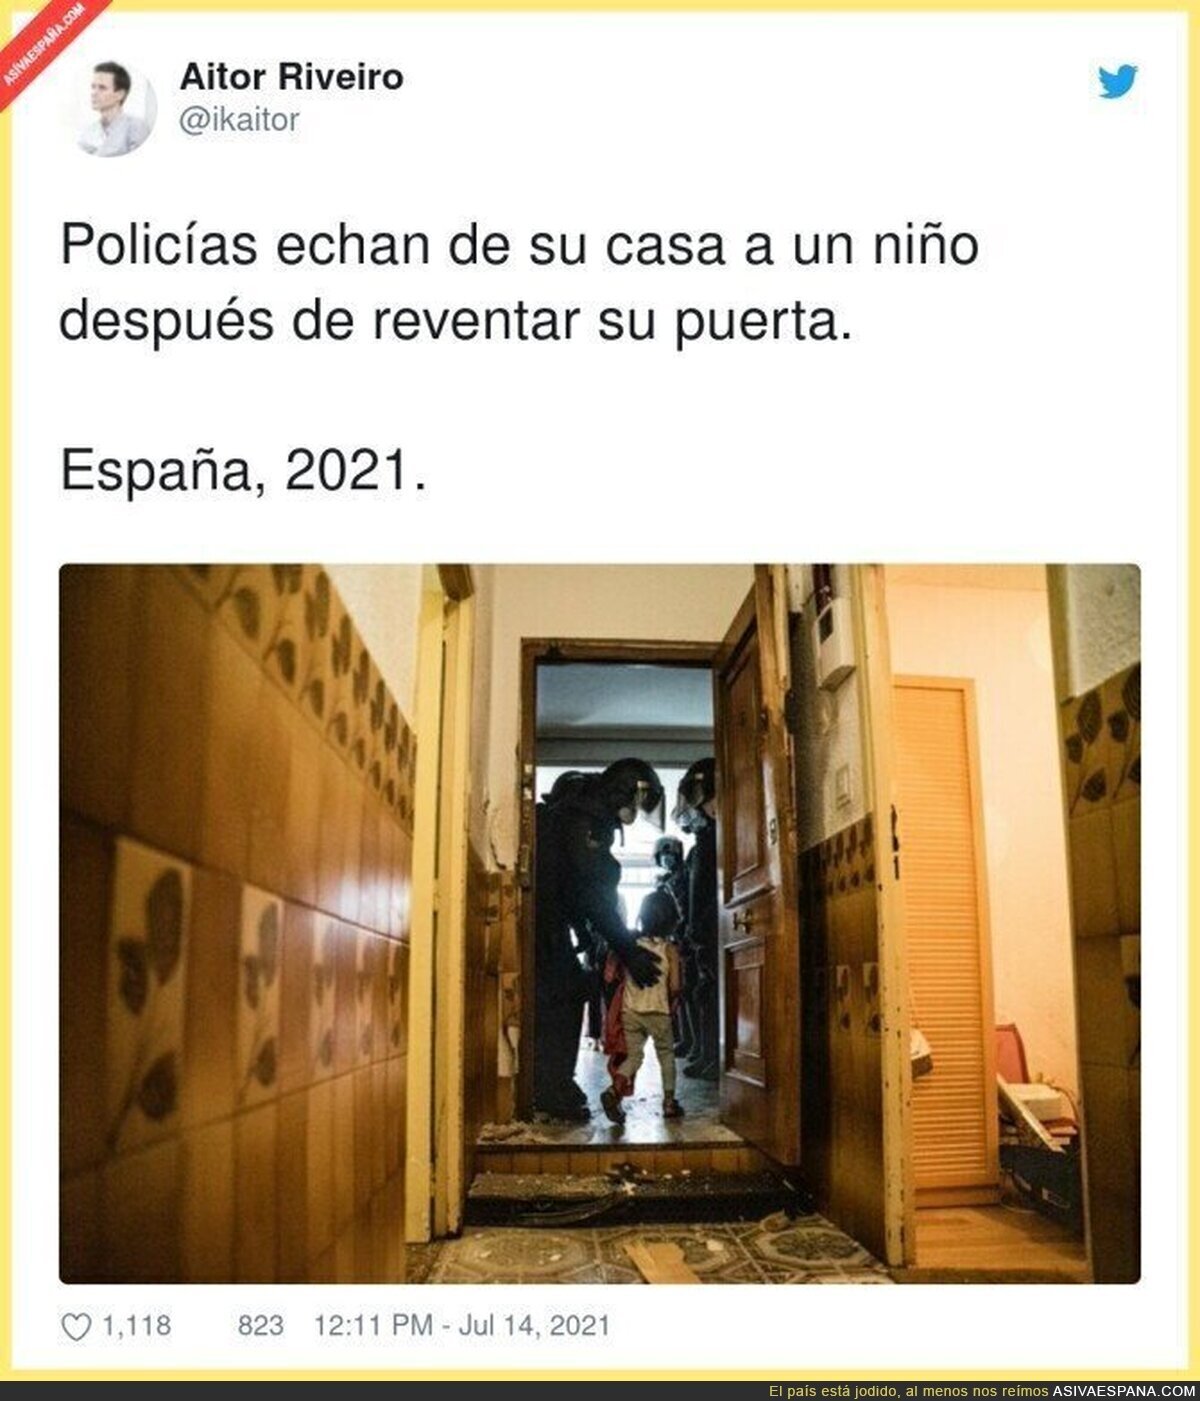 Que triste ver imágenes así en España...